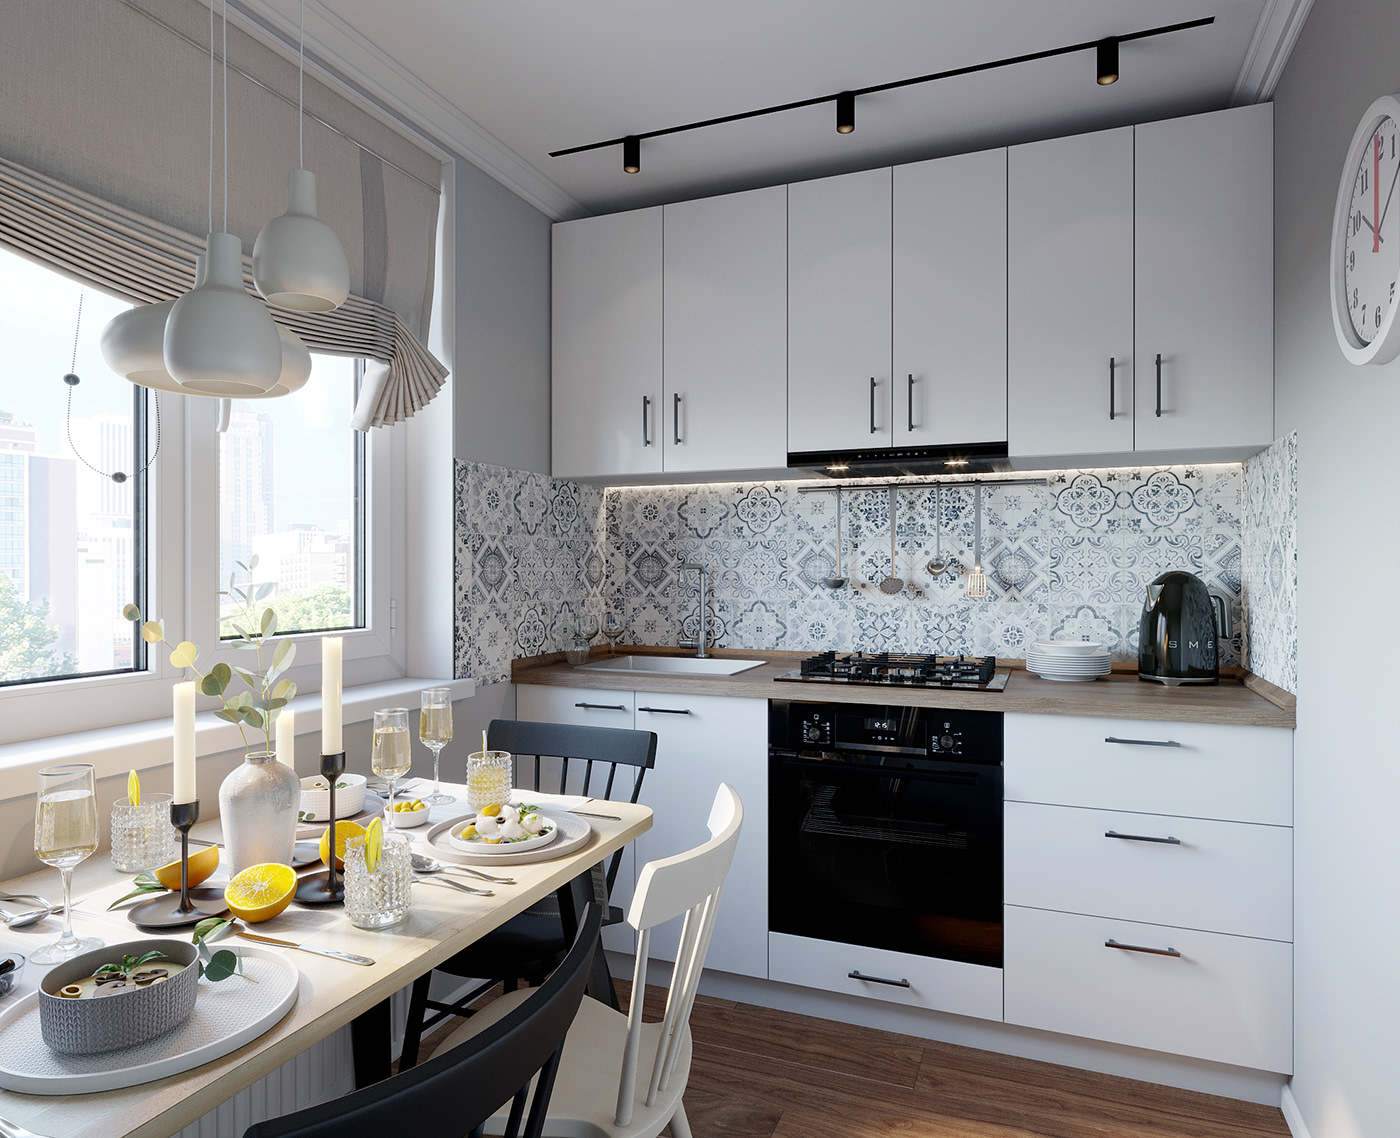 3dmax design Interior interior design  kitchen modern white kitchen